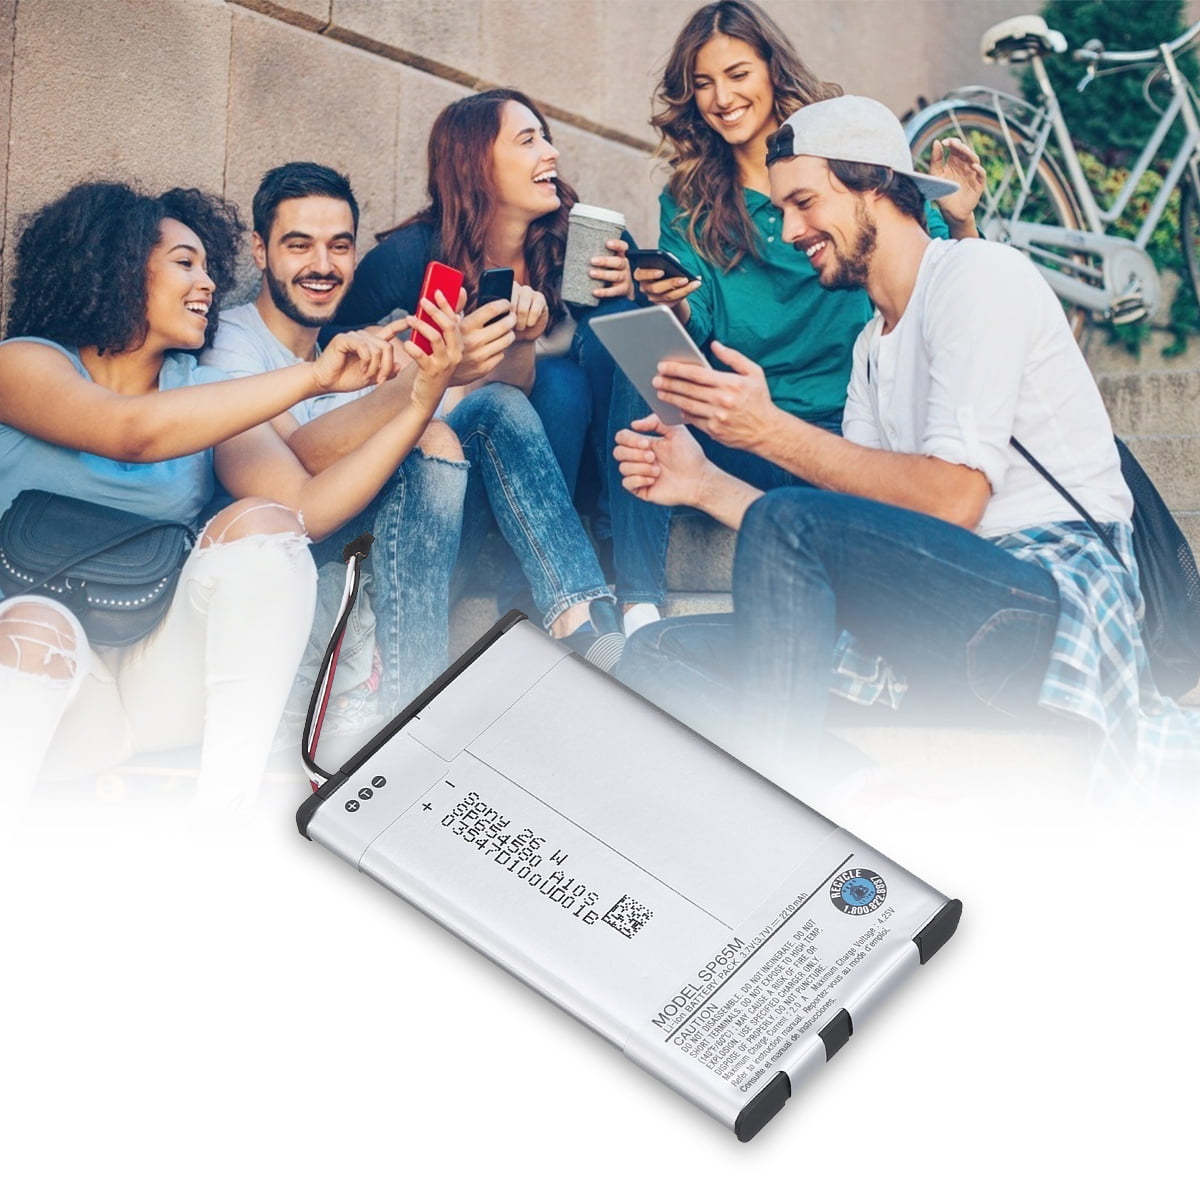 Batterie pour Sony PS Vita - 2200 mAh 3.7 V batterie - BatteryUpgrade